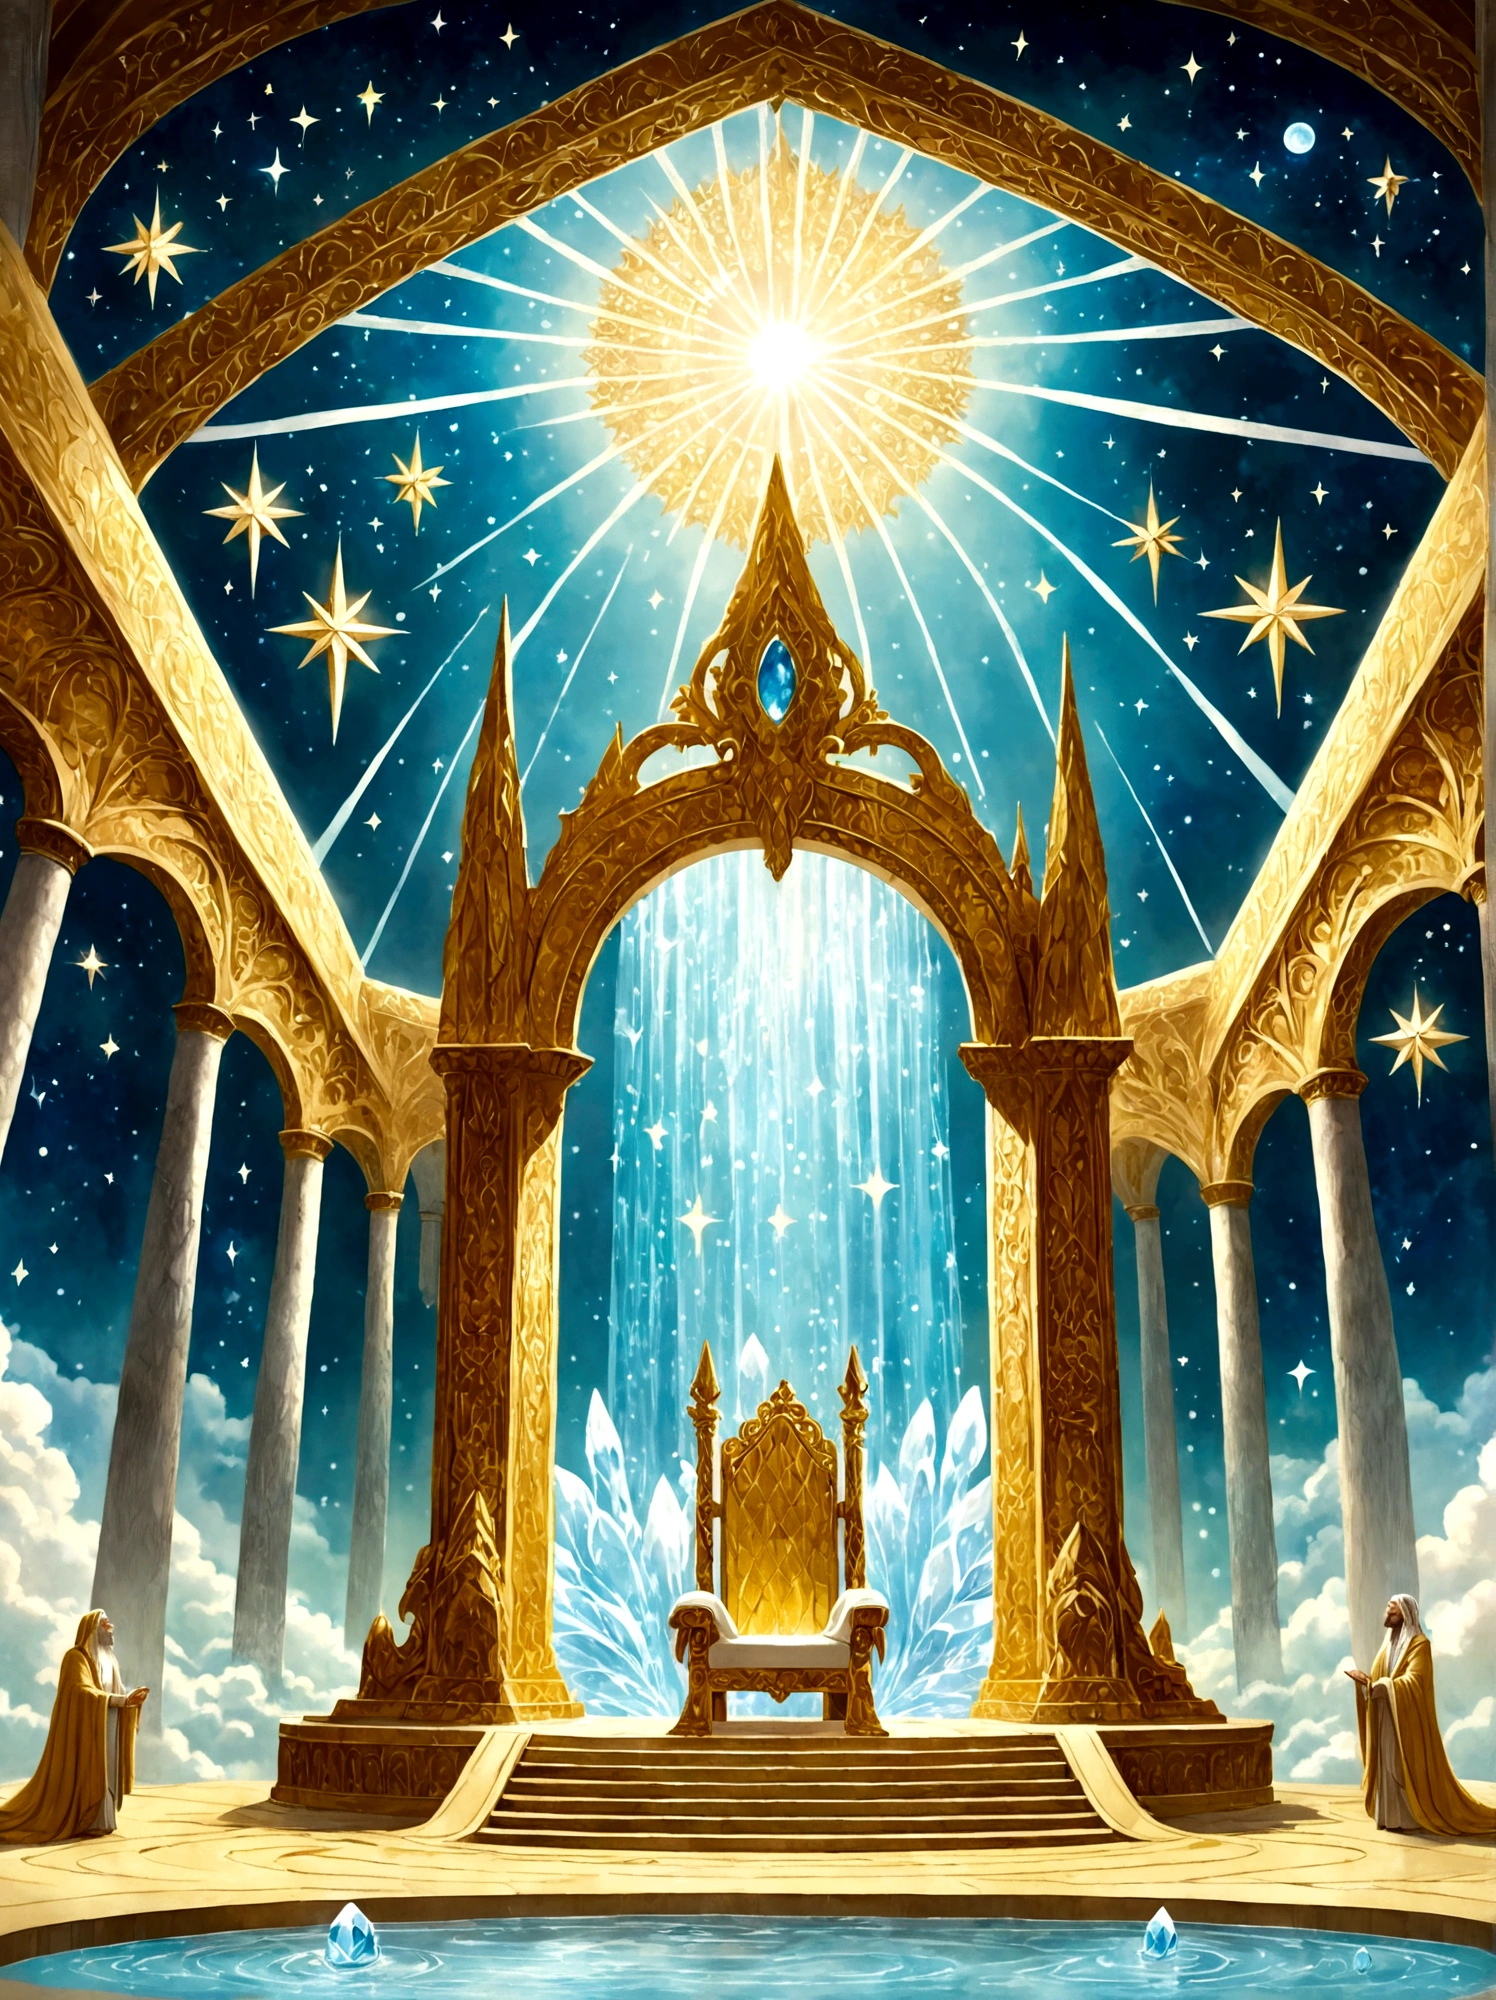 Imagine uma majestosa sala do trono além do reino humano, conforme descrito no primeiro livro de Enoque, A sala está cheia de grandeza, dominado por um enorme trono feito de puro, cristal cintilante. Ao lado do trono, quatro riachos de água brotam, simbolizando os quatro rios do paraíso, A sala está fortemente iluminada por luz radiante, e o chão é como um radiante, cristal transparente, Portões perolados lindamente esculpidos conduzem à câmara, enquanto uma miríade de estrelas brilham no alto da abóbada, teto celestial, Um leve, névoa etérea permeia o ar, melhorando ainda mais a atmosfera mística